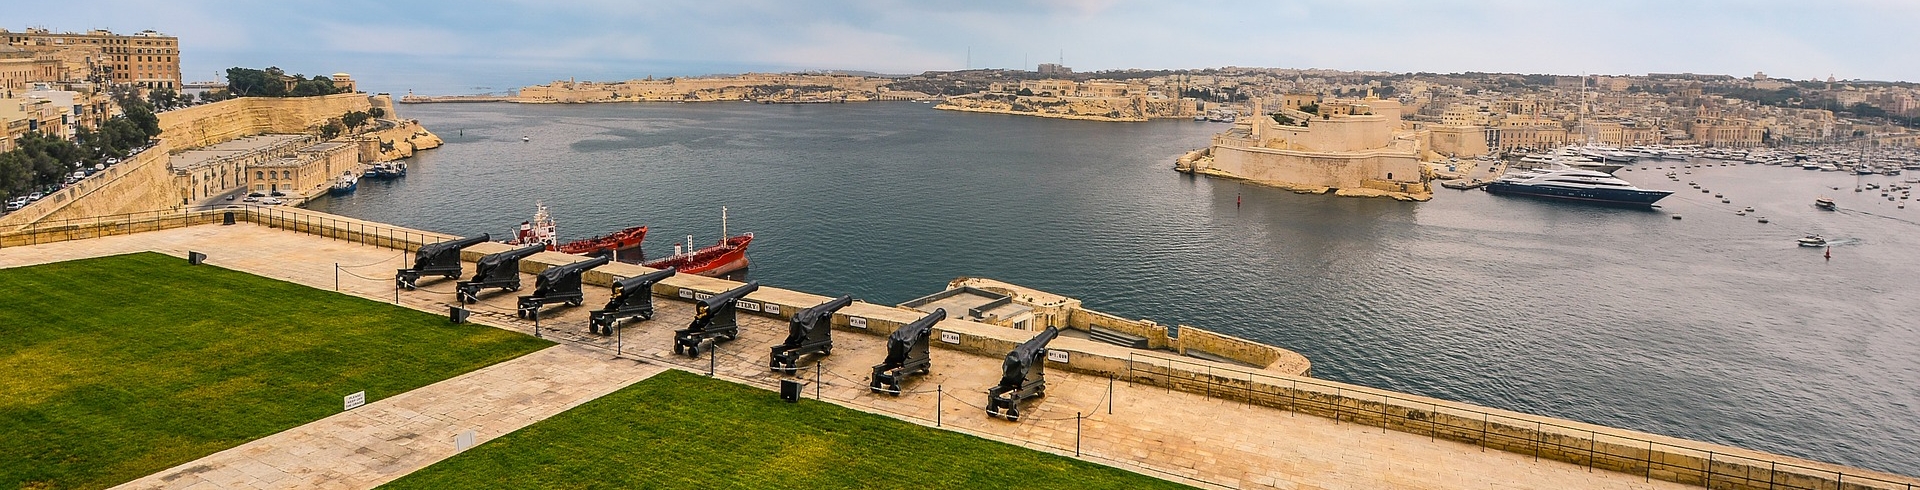 MUZA – Neues Nationalmuseum auf Malta